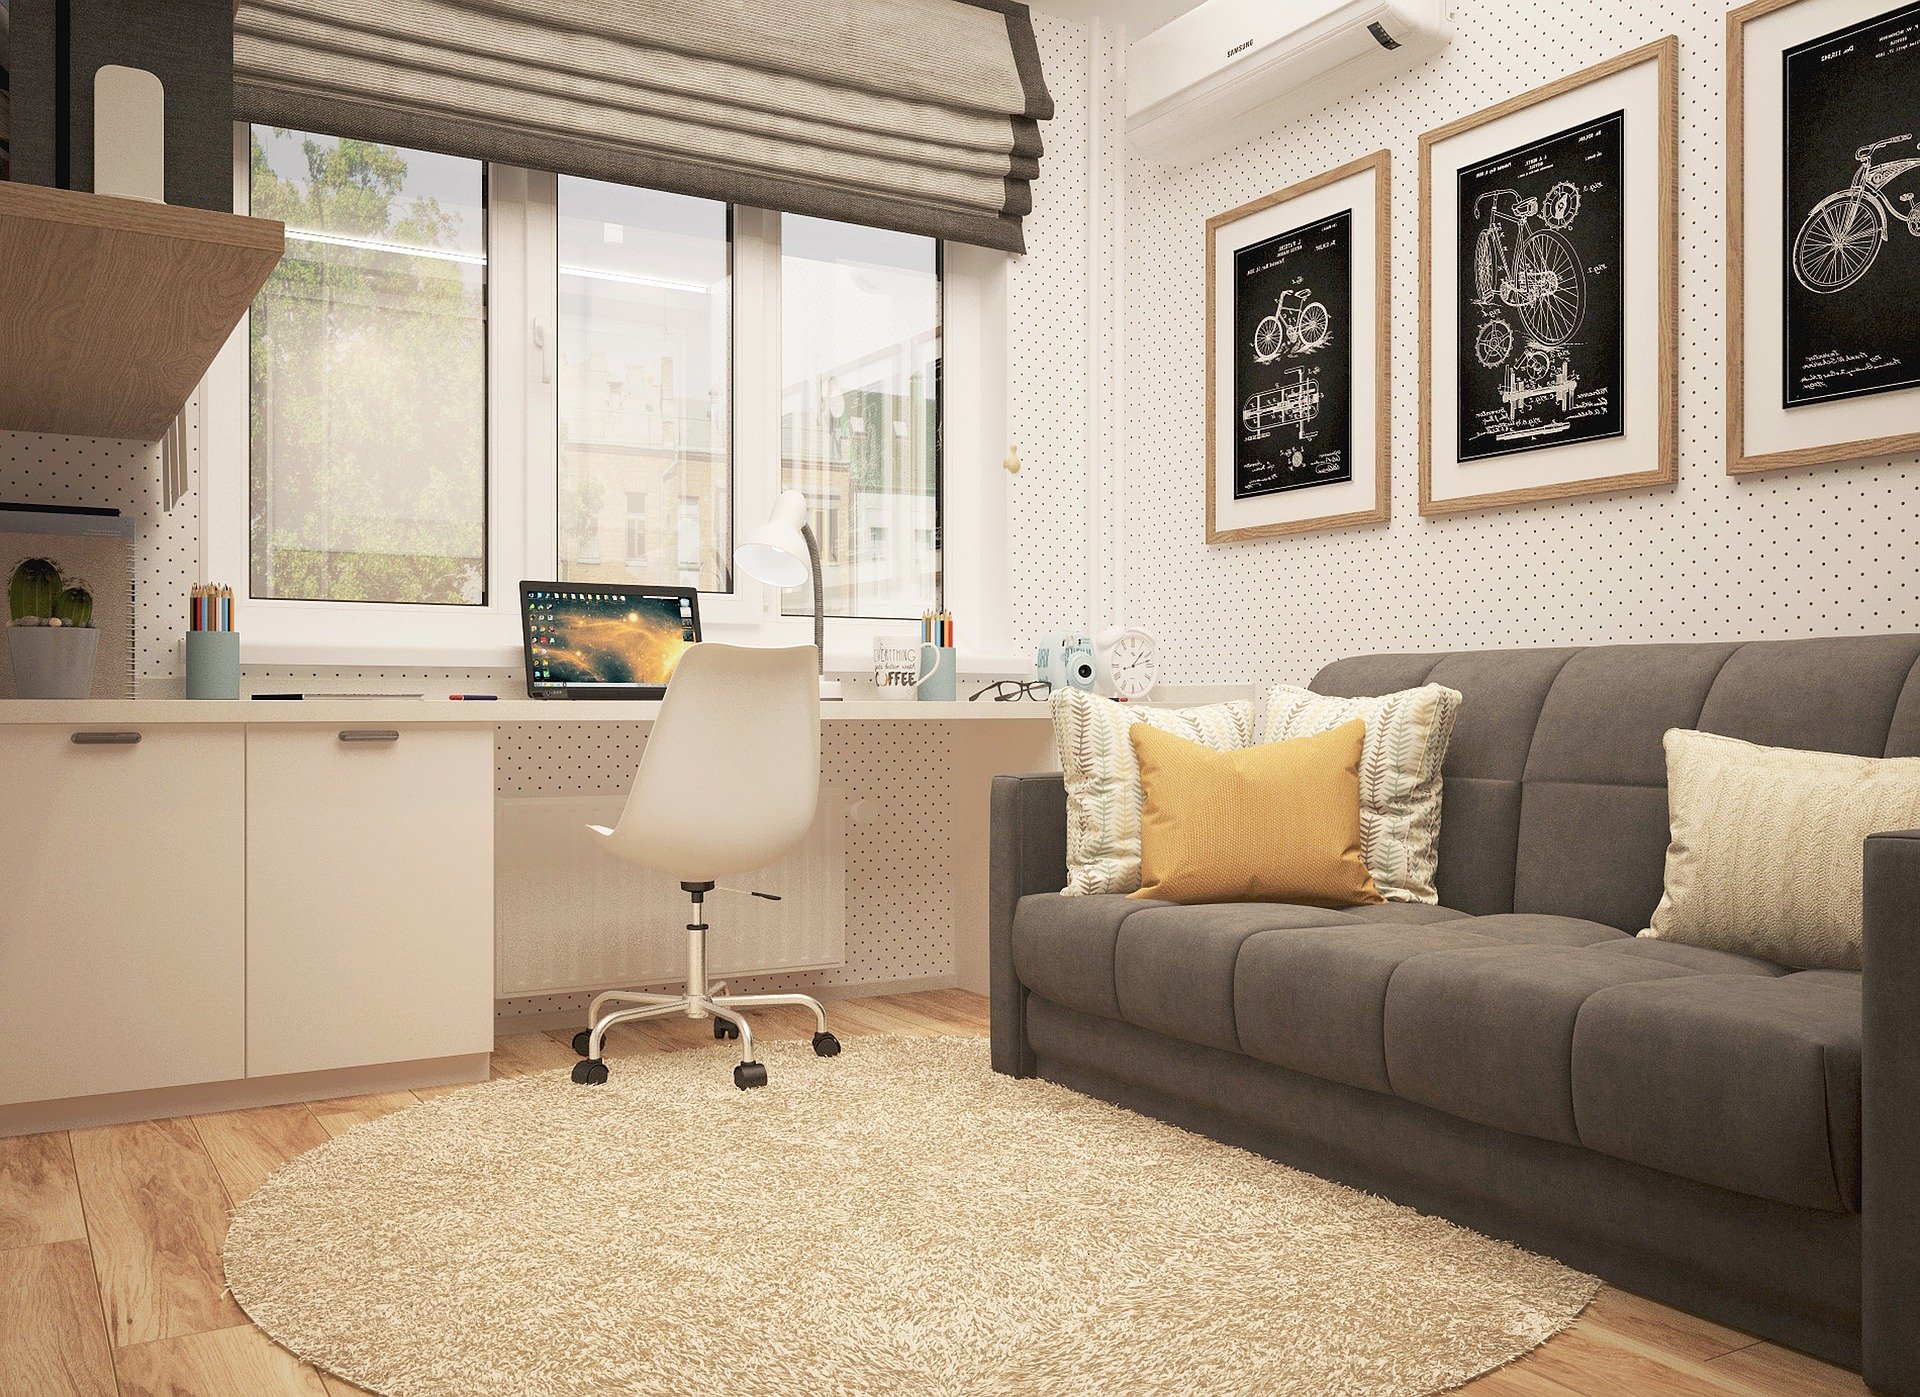 Foto de uma sala com sofá, tapete e mesa com computador. Imagem ilustrativa para o texto tapete impermeável.